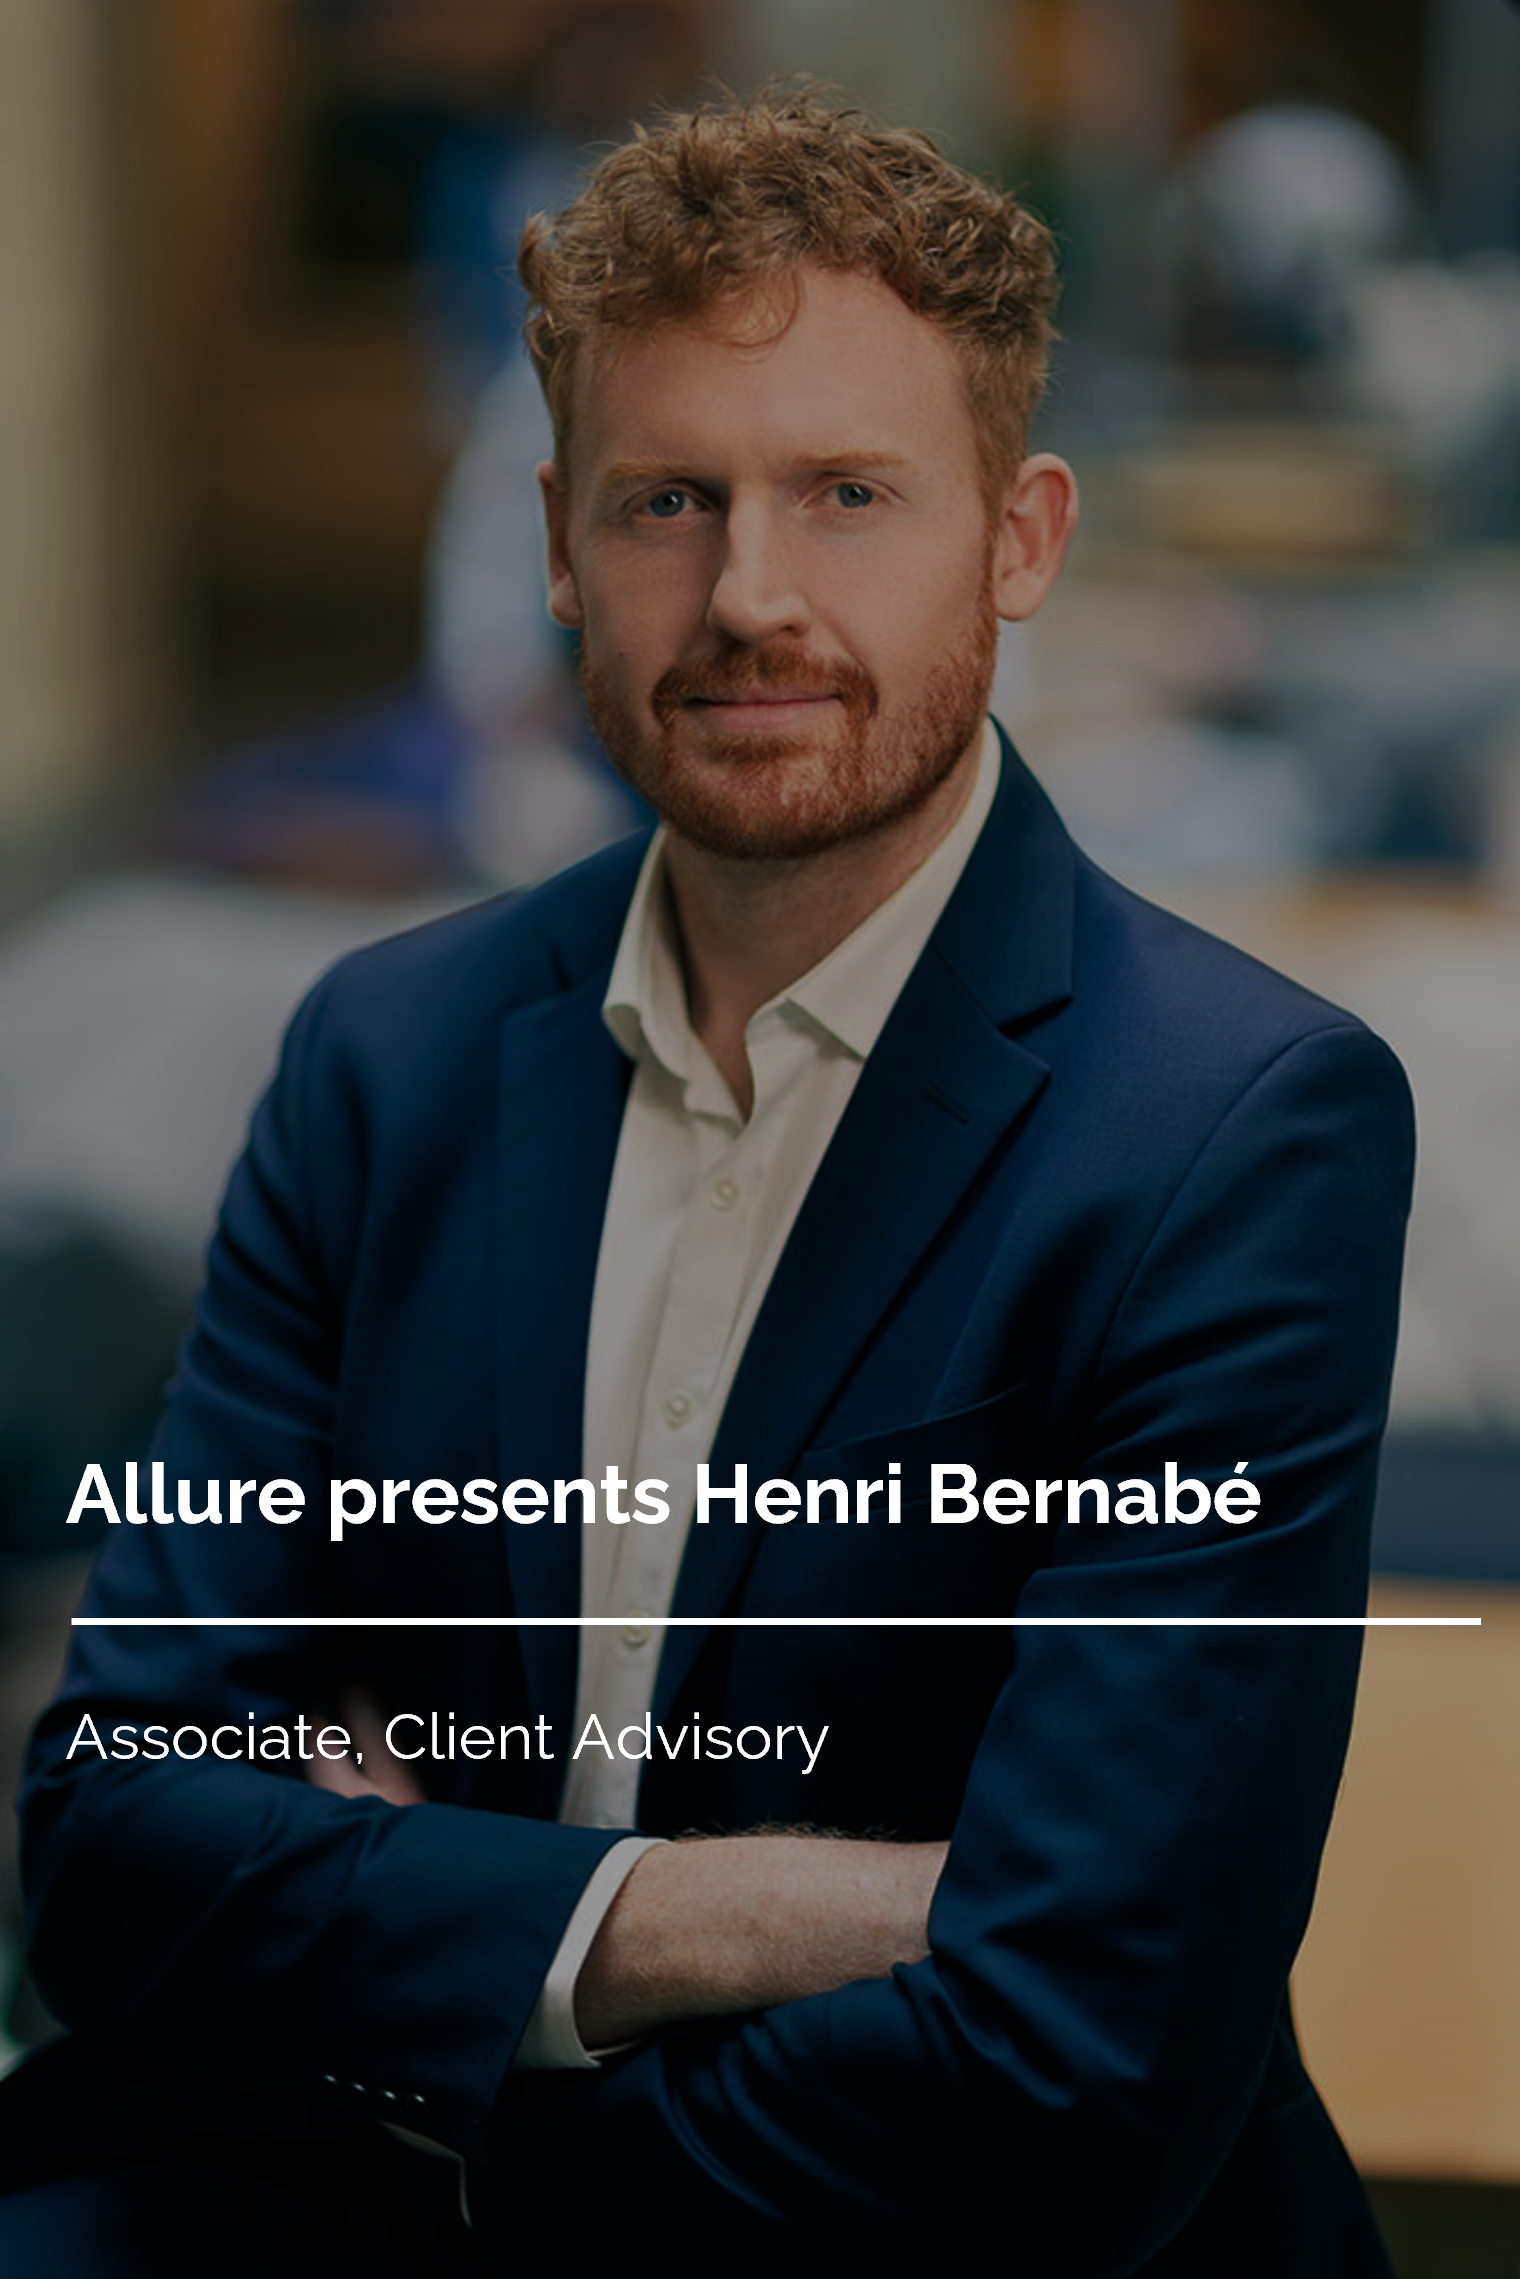 Allure presents Henri Bernabé